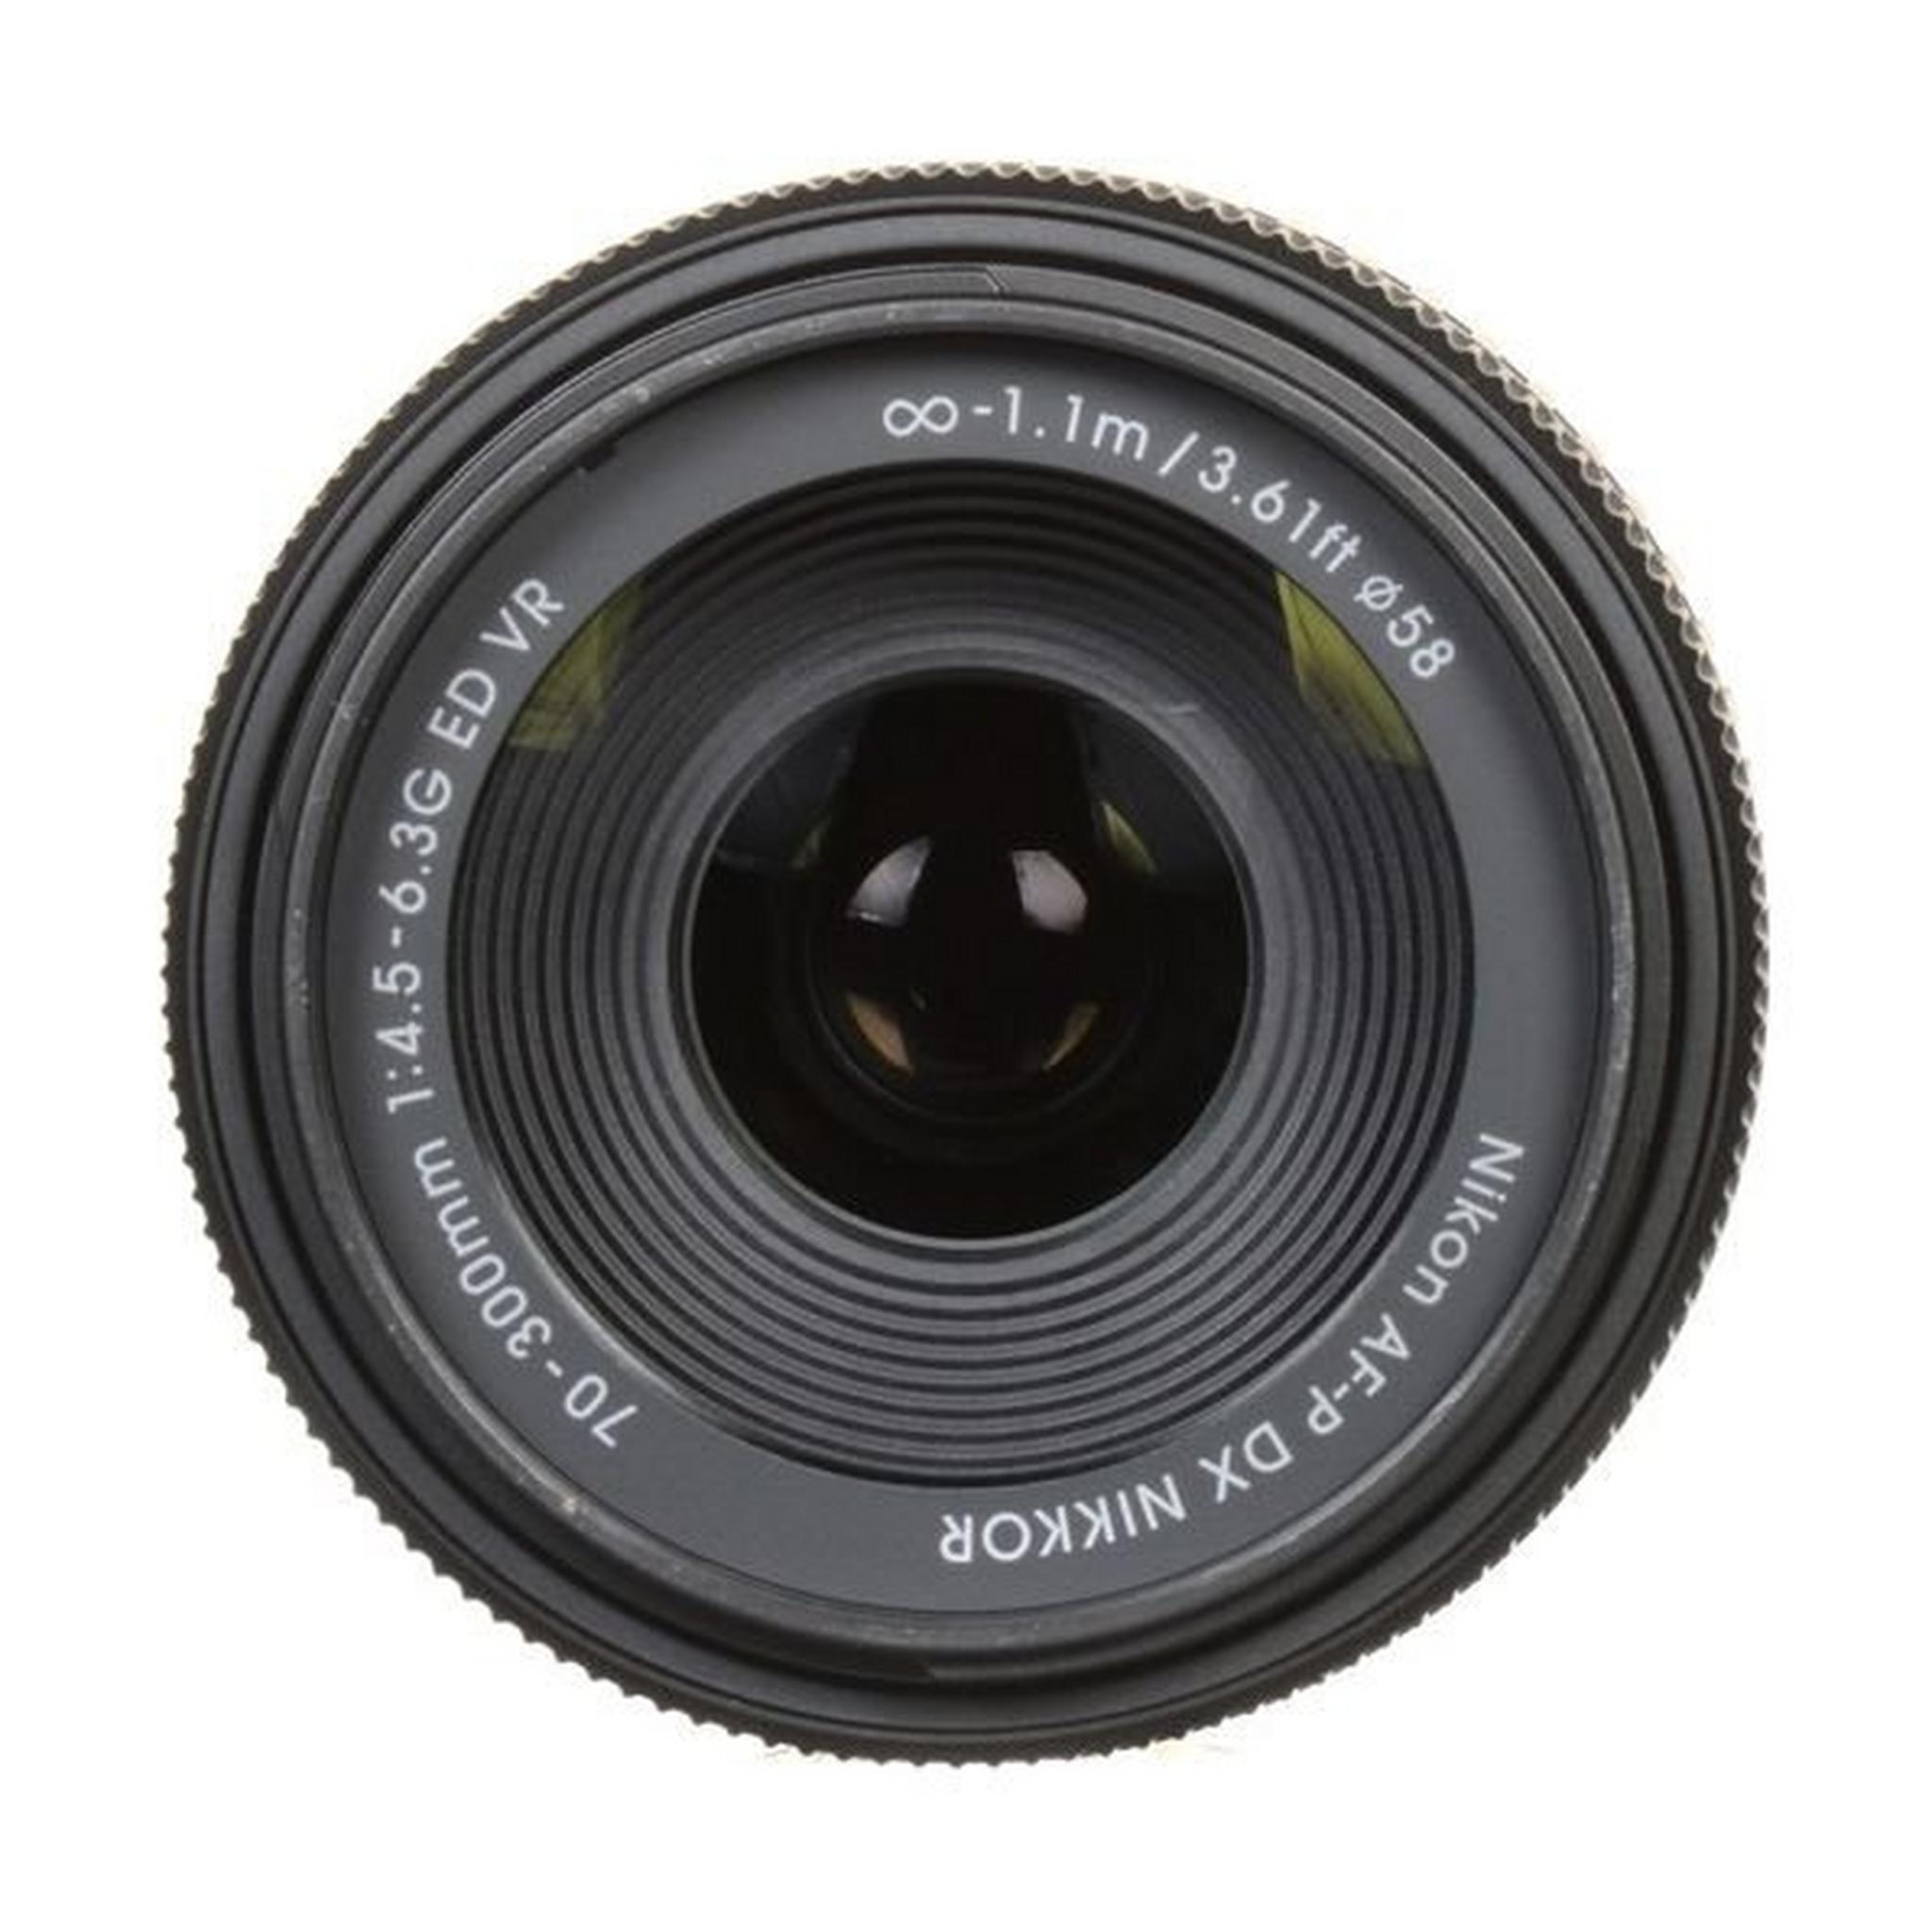 Nikon AF-P DX NIKKOR 70-300mm f/4.5-6.3G ED VR Lens - Black